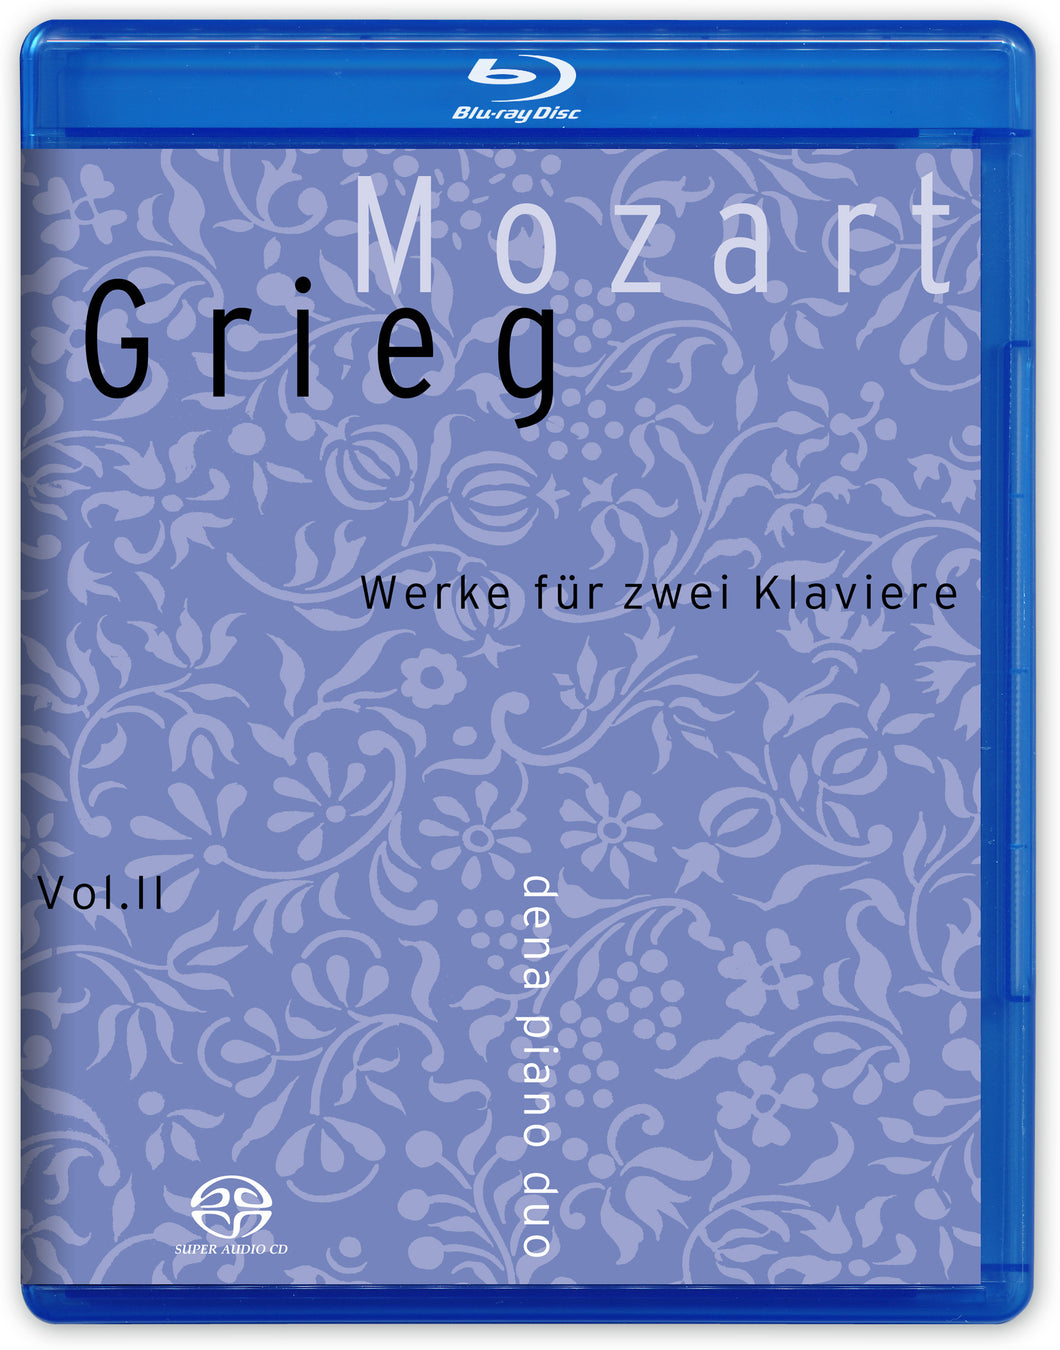 MOZART/GRIEG vol II - dena piano duo